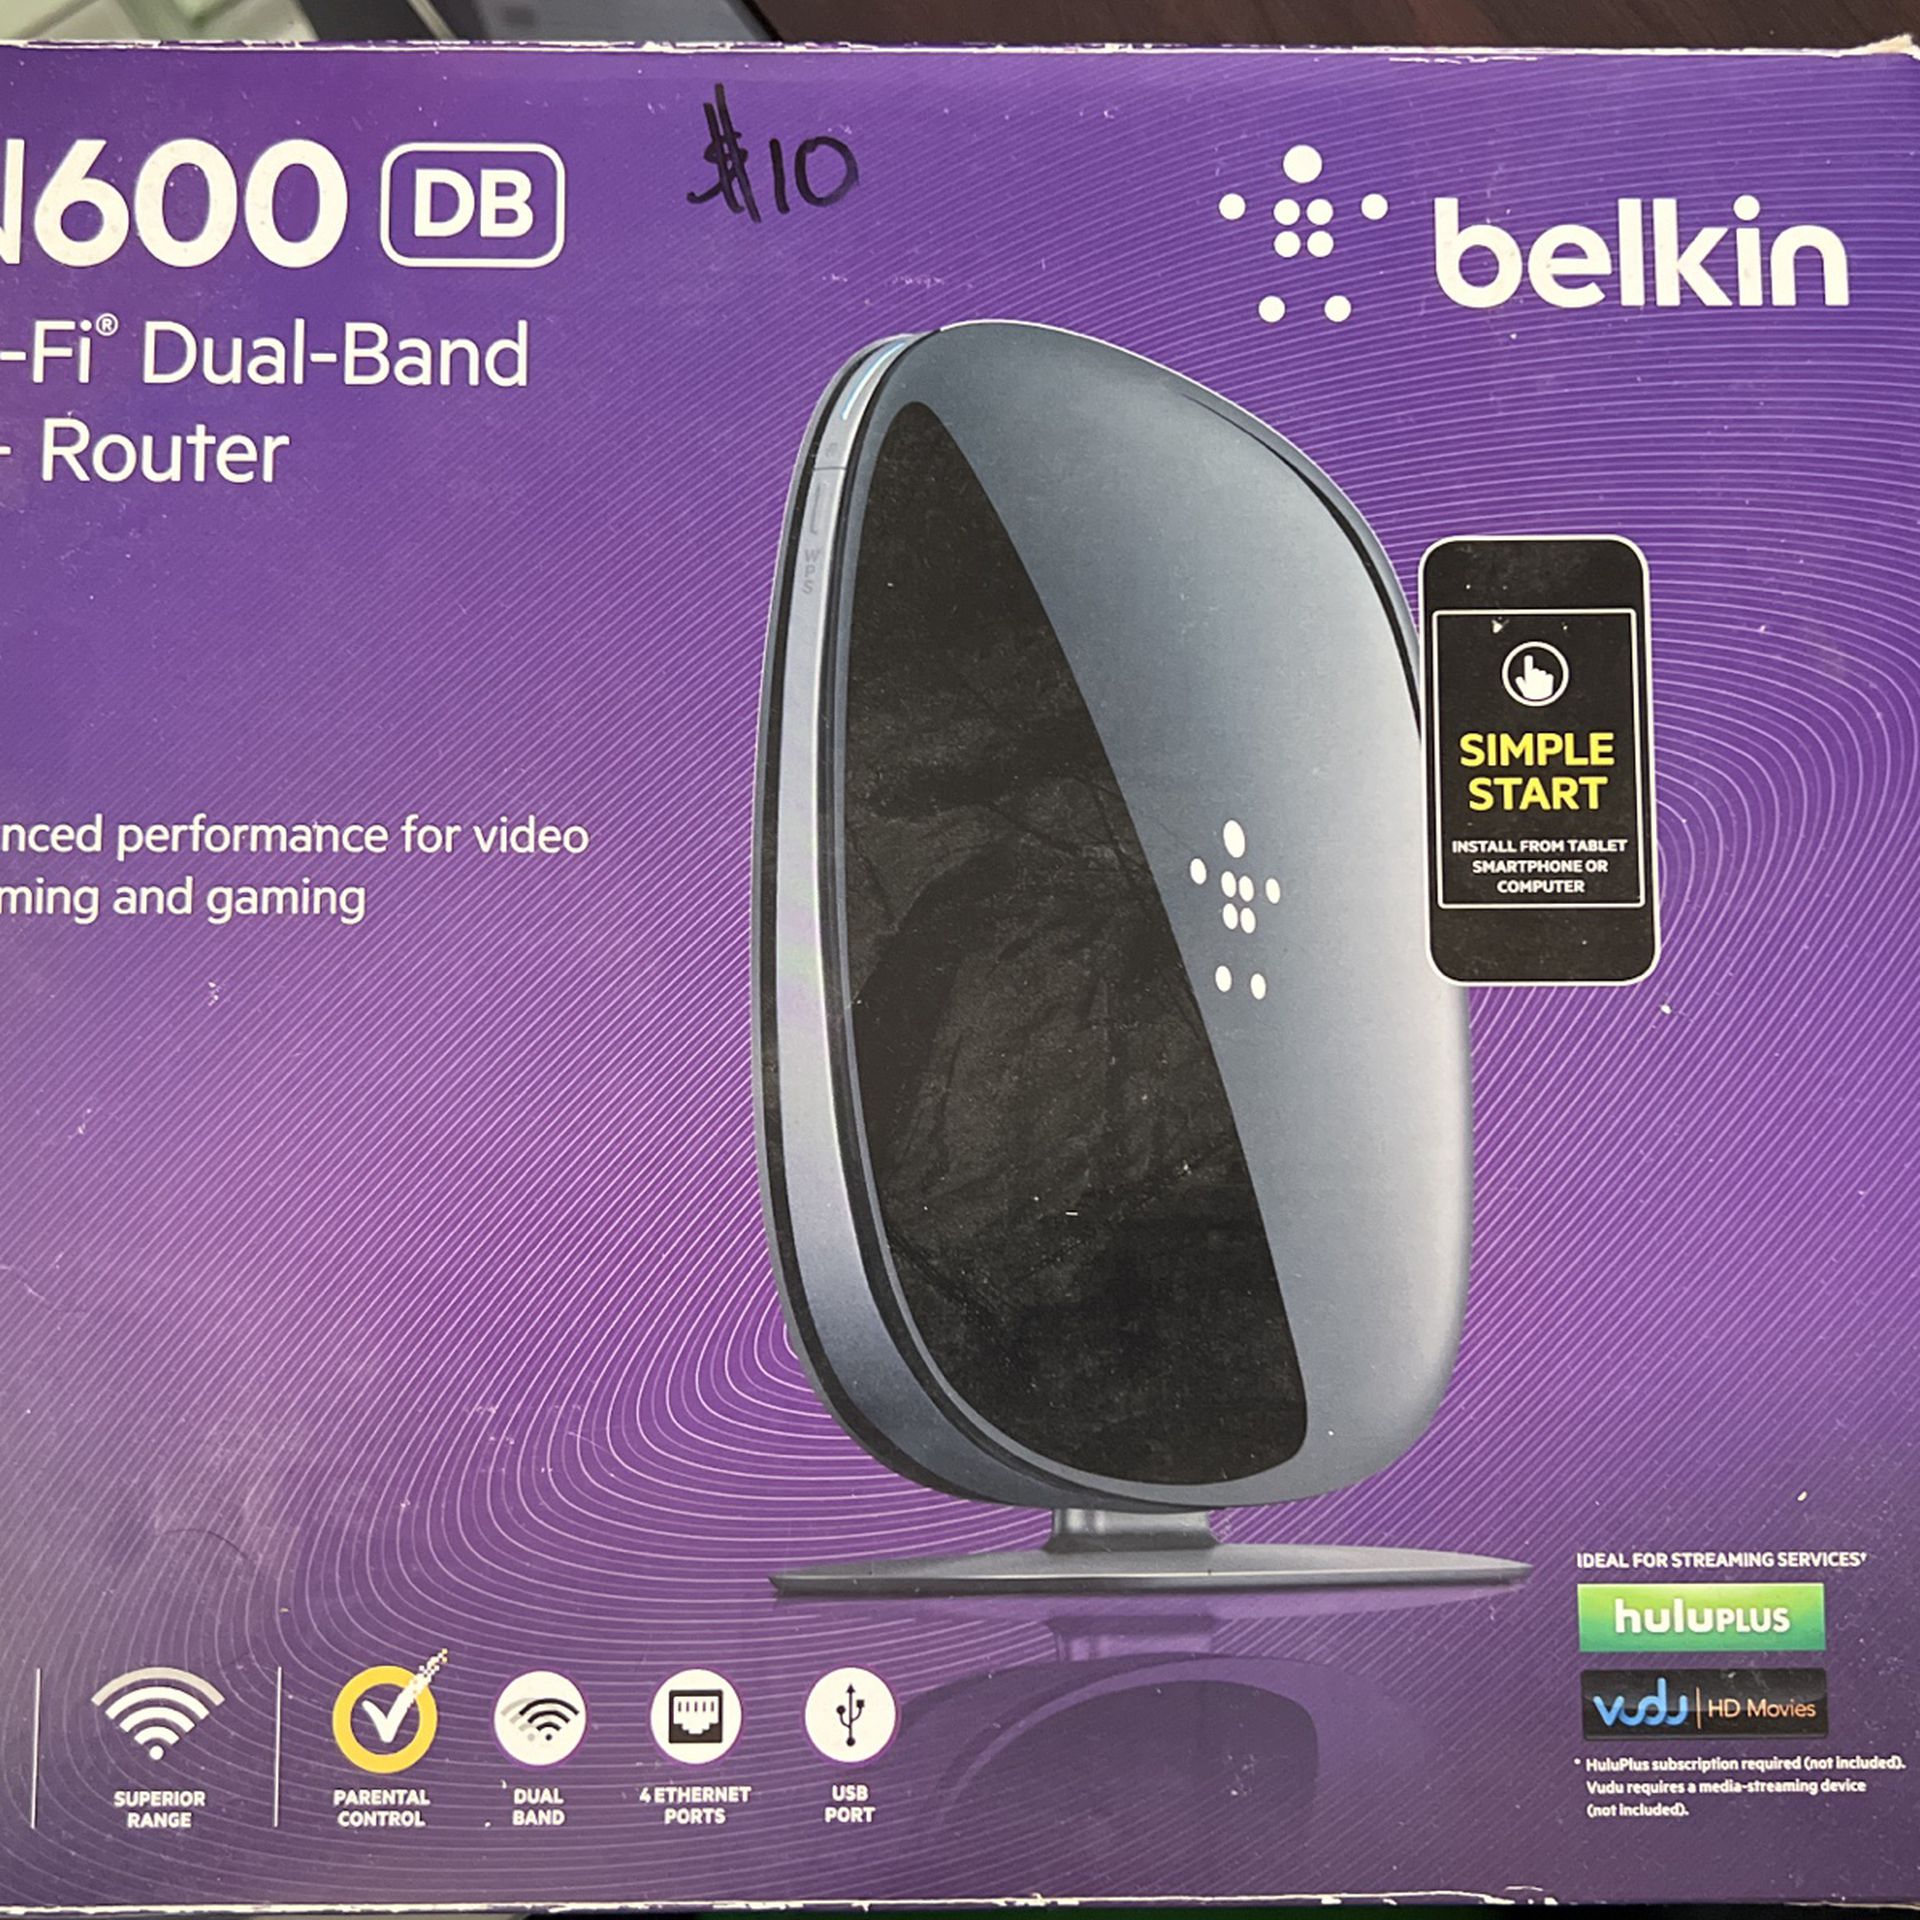 Belkin N600 DB Wi-Fi Dual-Band N+ Router